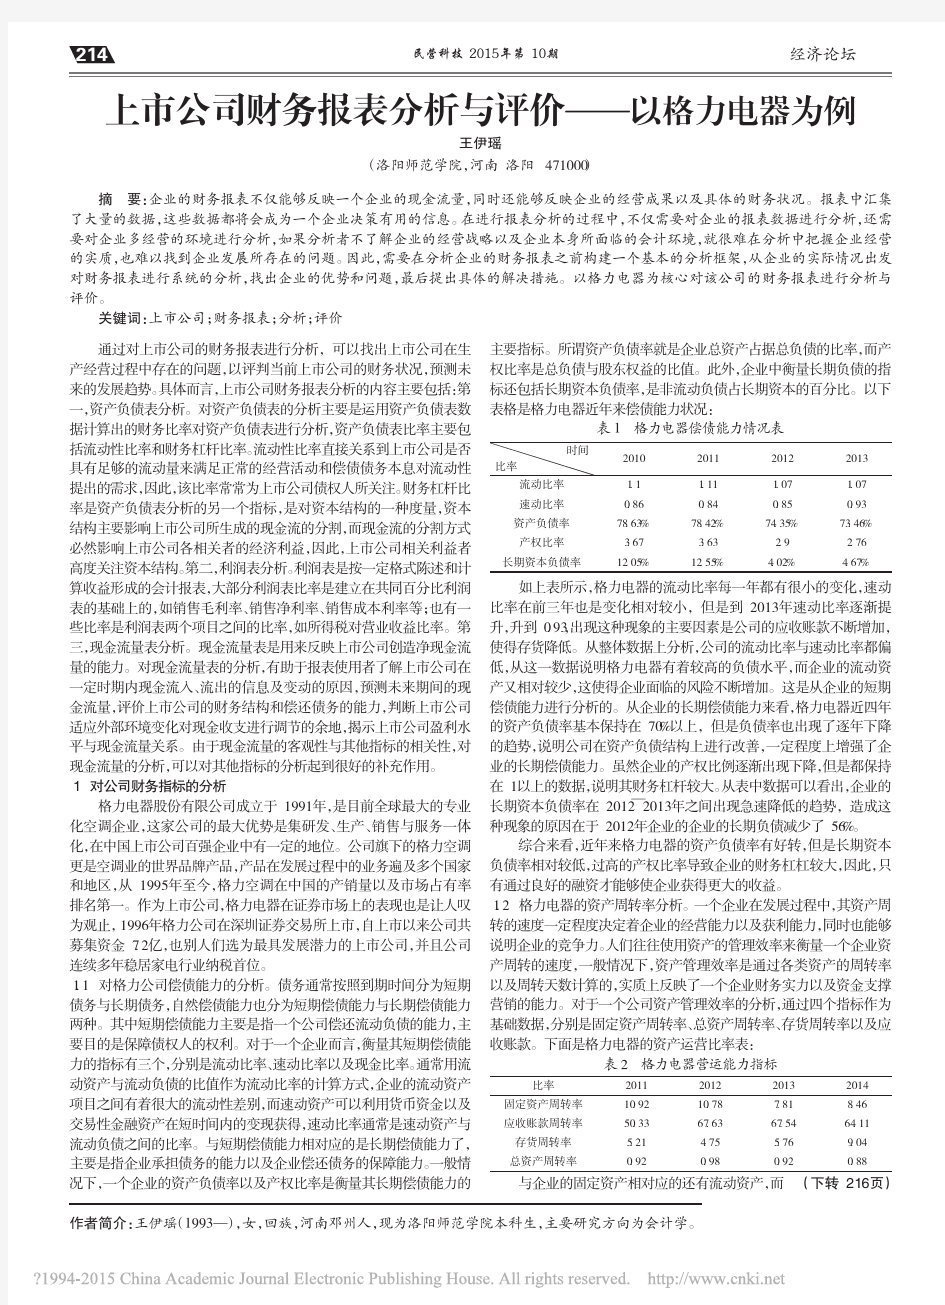 上市公司财务报表分析与评价_以格力电器为例_王伊瑶